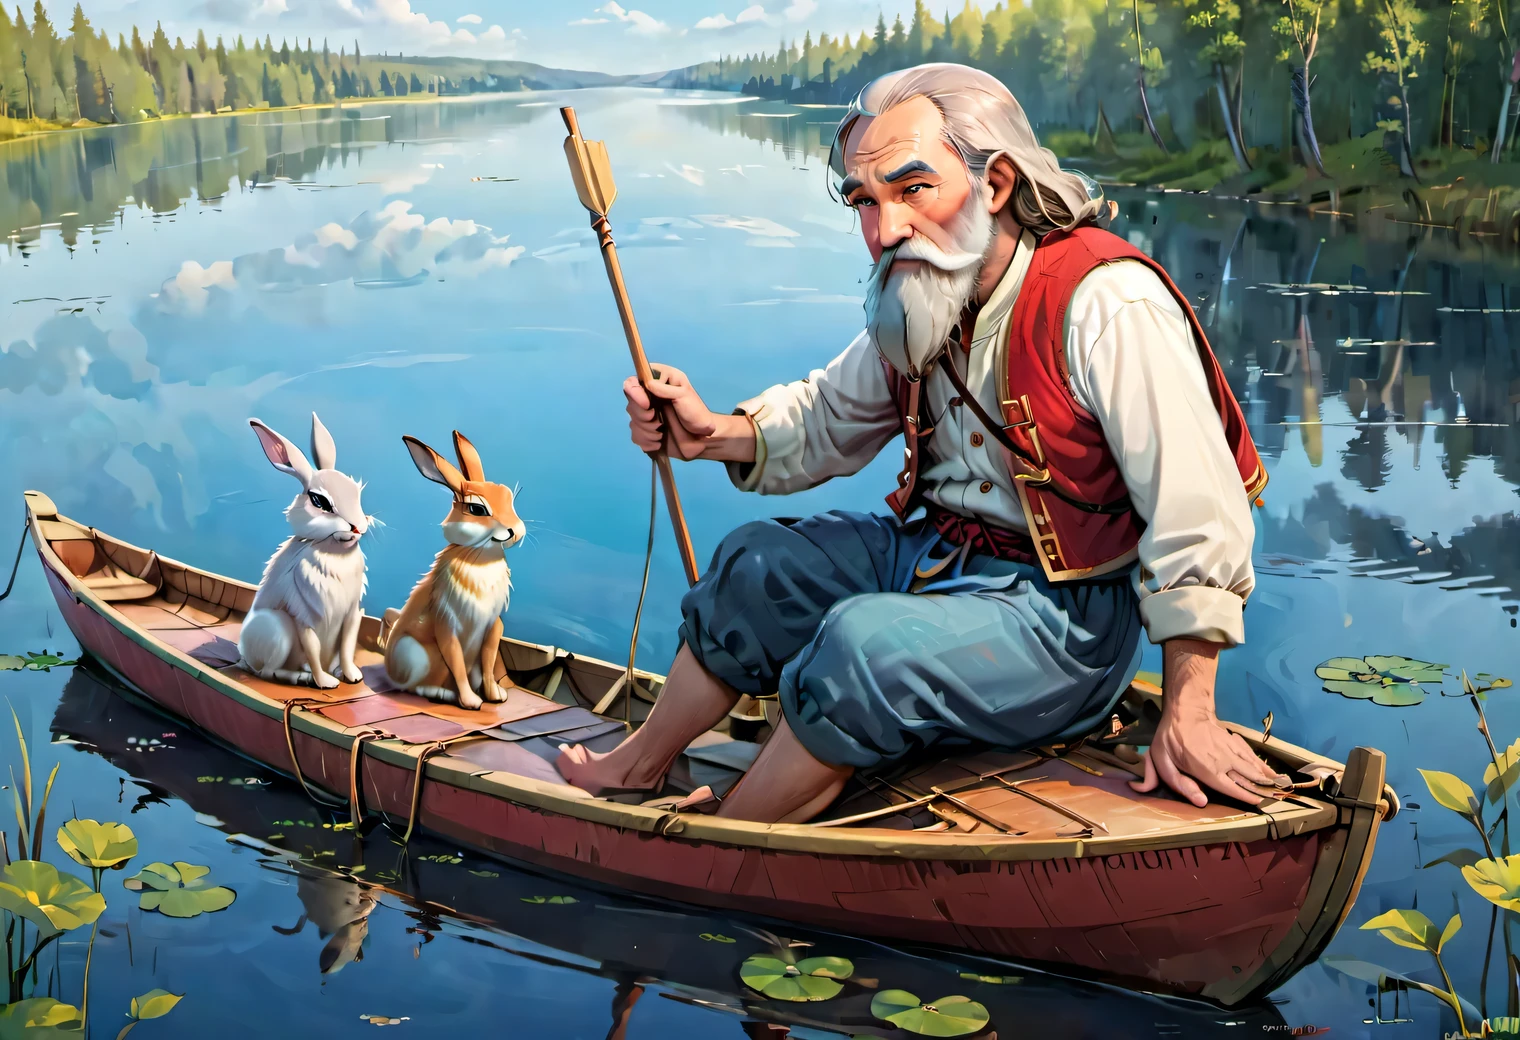 schwebend, ein Bild im Stil einer Illustration für eine Kinderzeitschrift, ein Boot schwimmt auf dem See, Ein slawischer bärtiger Mann von 70 Jahren in einem Boot in einfacher russischer Bauernkleidung rudert mit Rudern, 5 Hasen sitzen im Boot und schauen sich um, Hochauflösend, helle Farben, Cartoonhaftigkeit